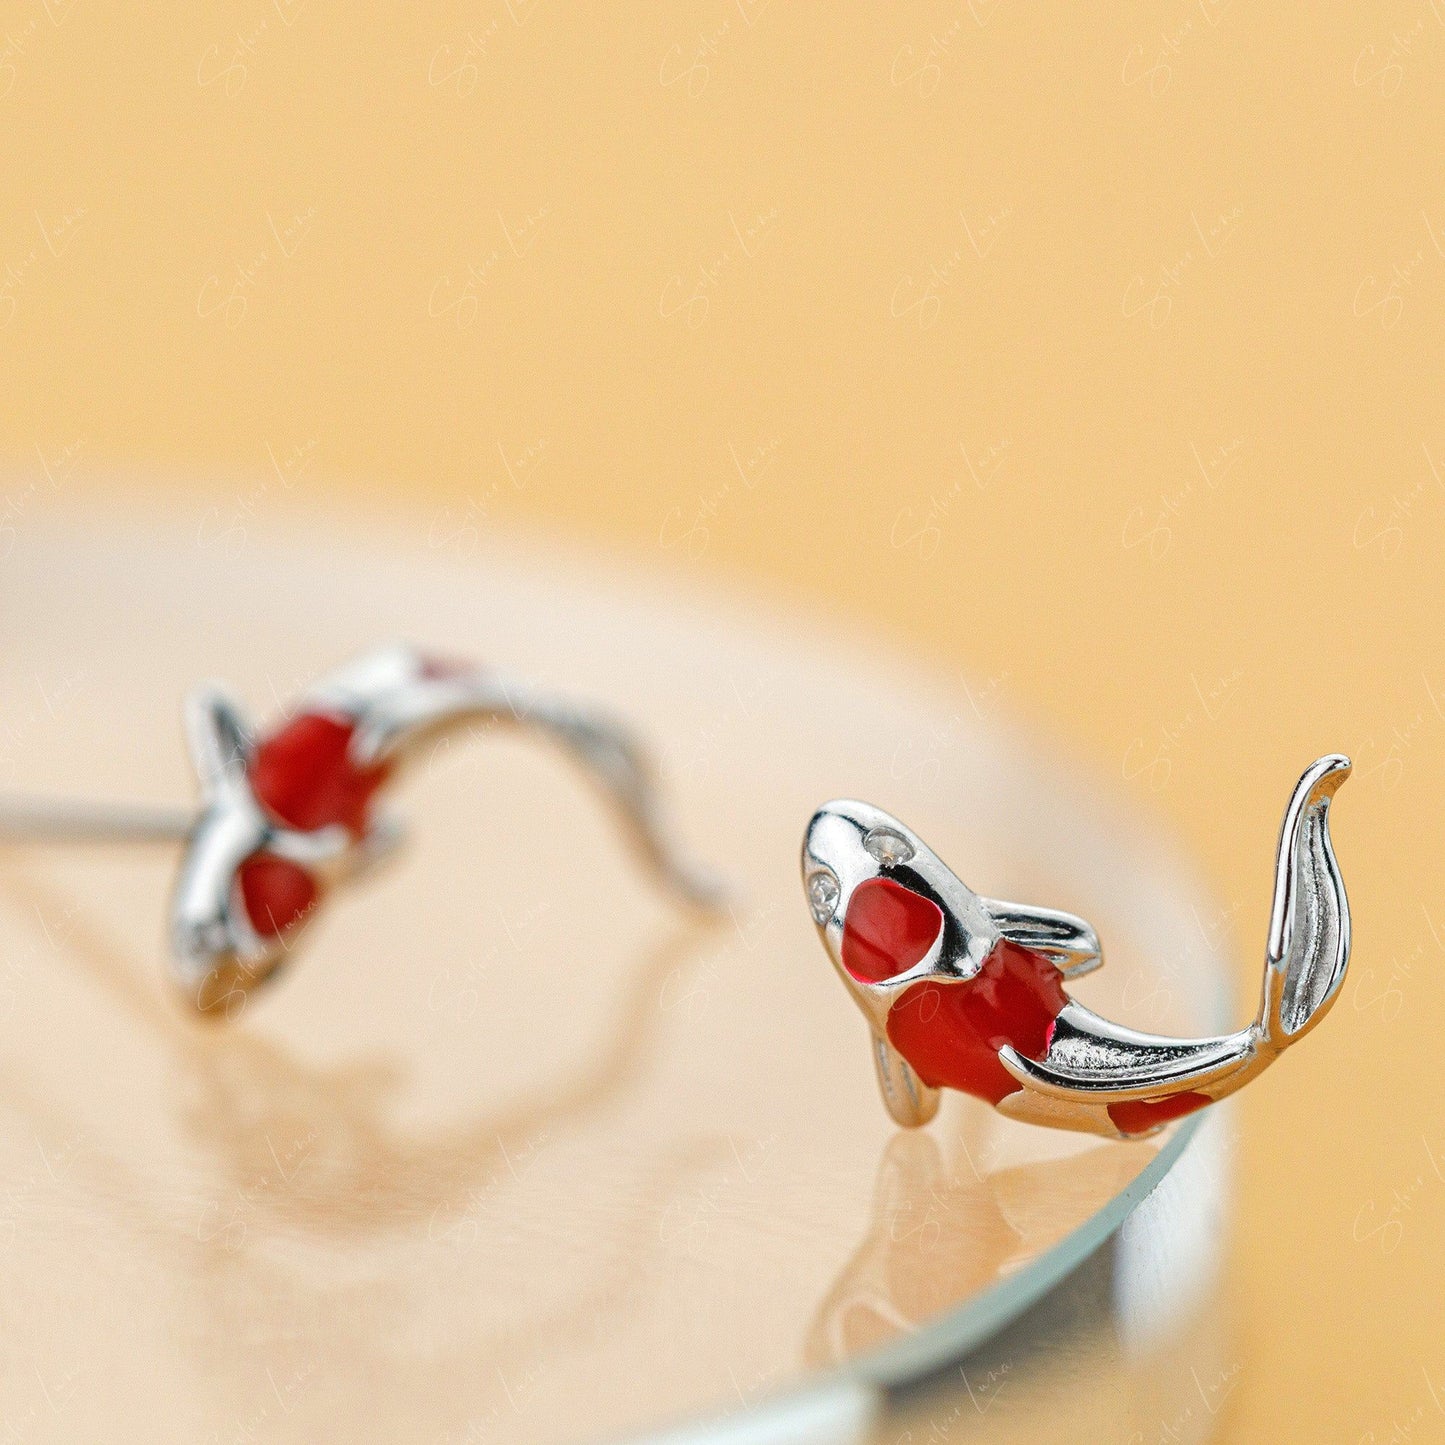 Tiny Koi fish stud earrings